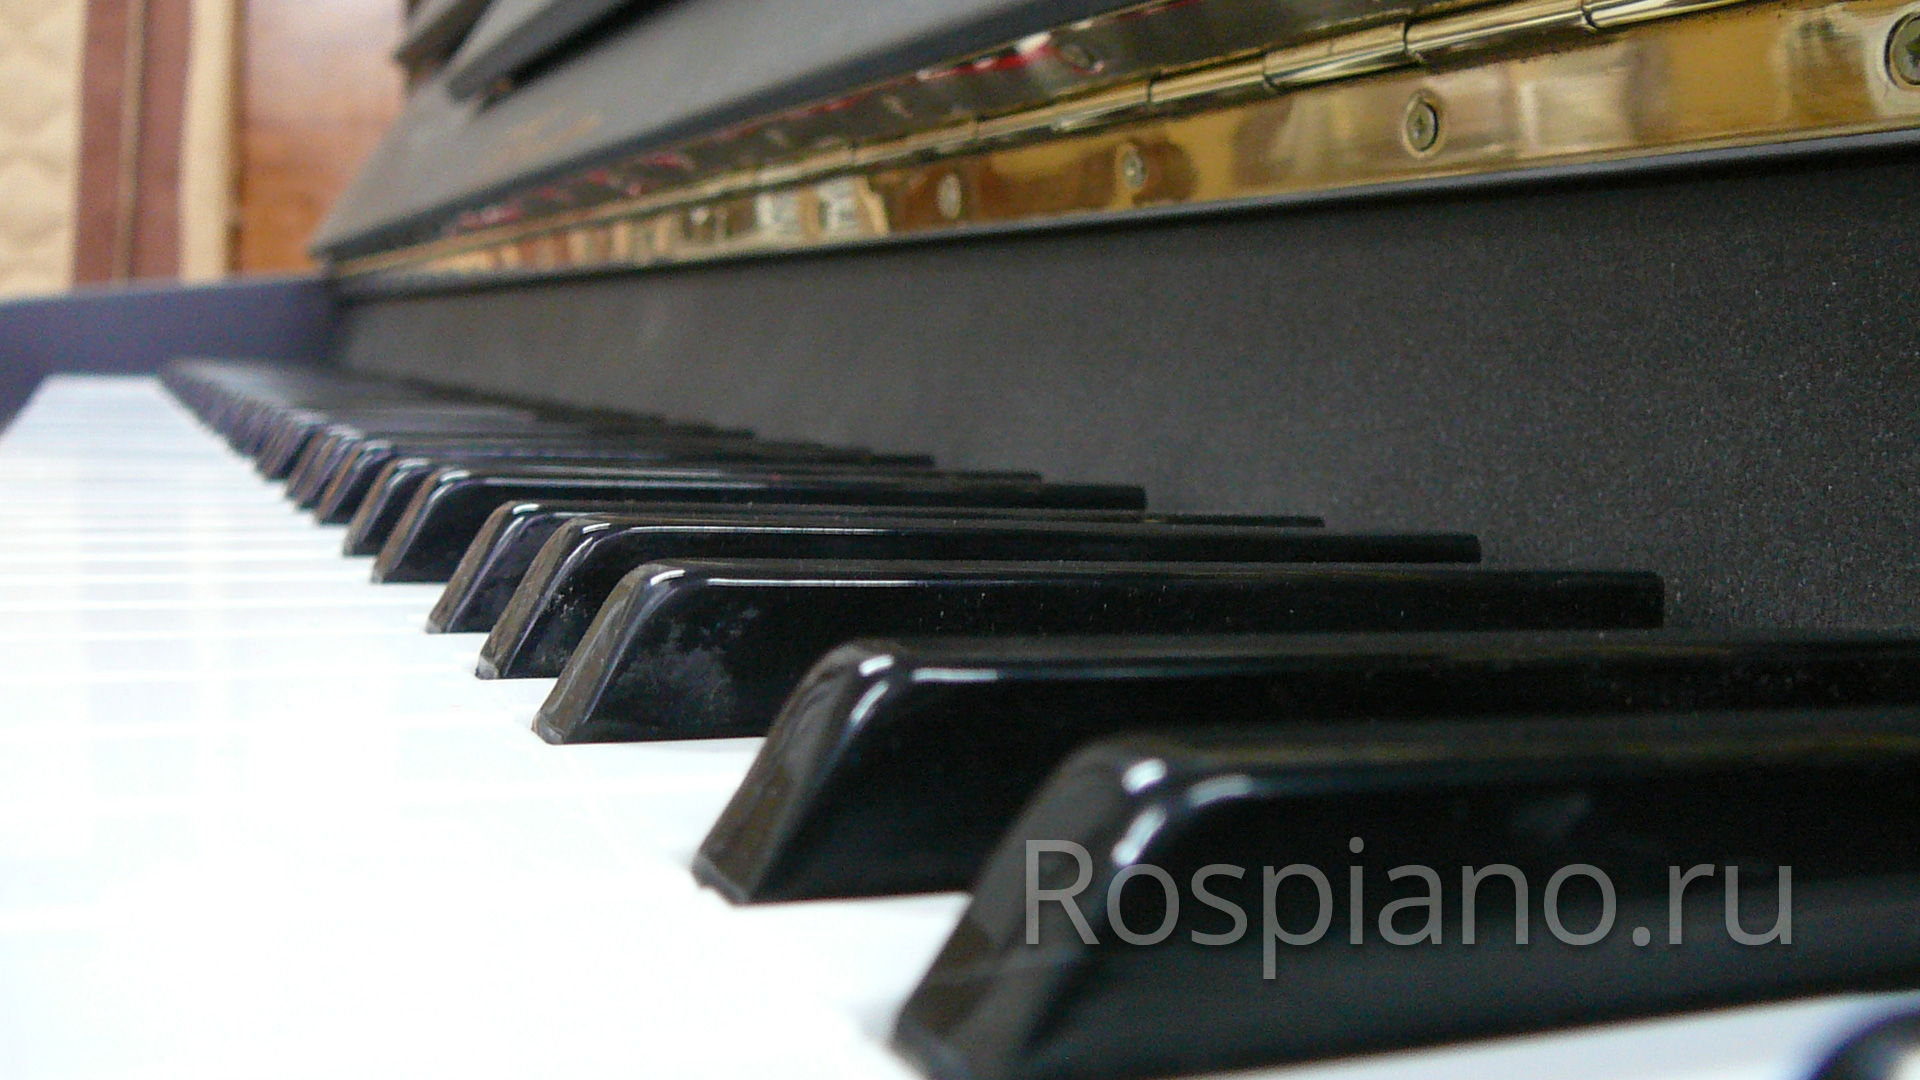 Сколько клавиш у пианино